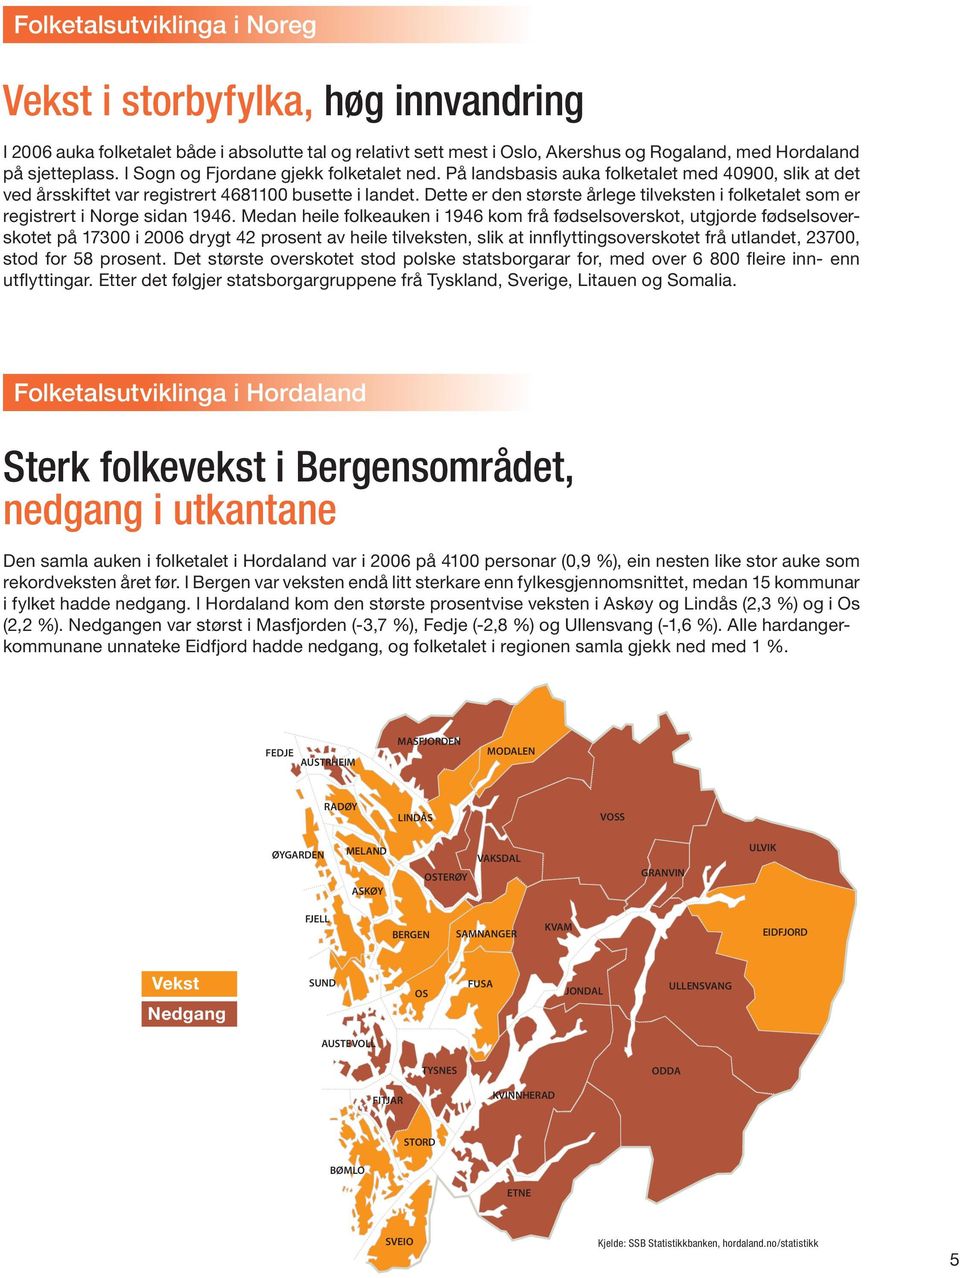 Dette er den største årlege tilveksten i folketalet som er registrert i Norge sidan 1946.